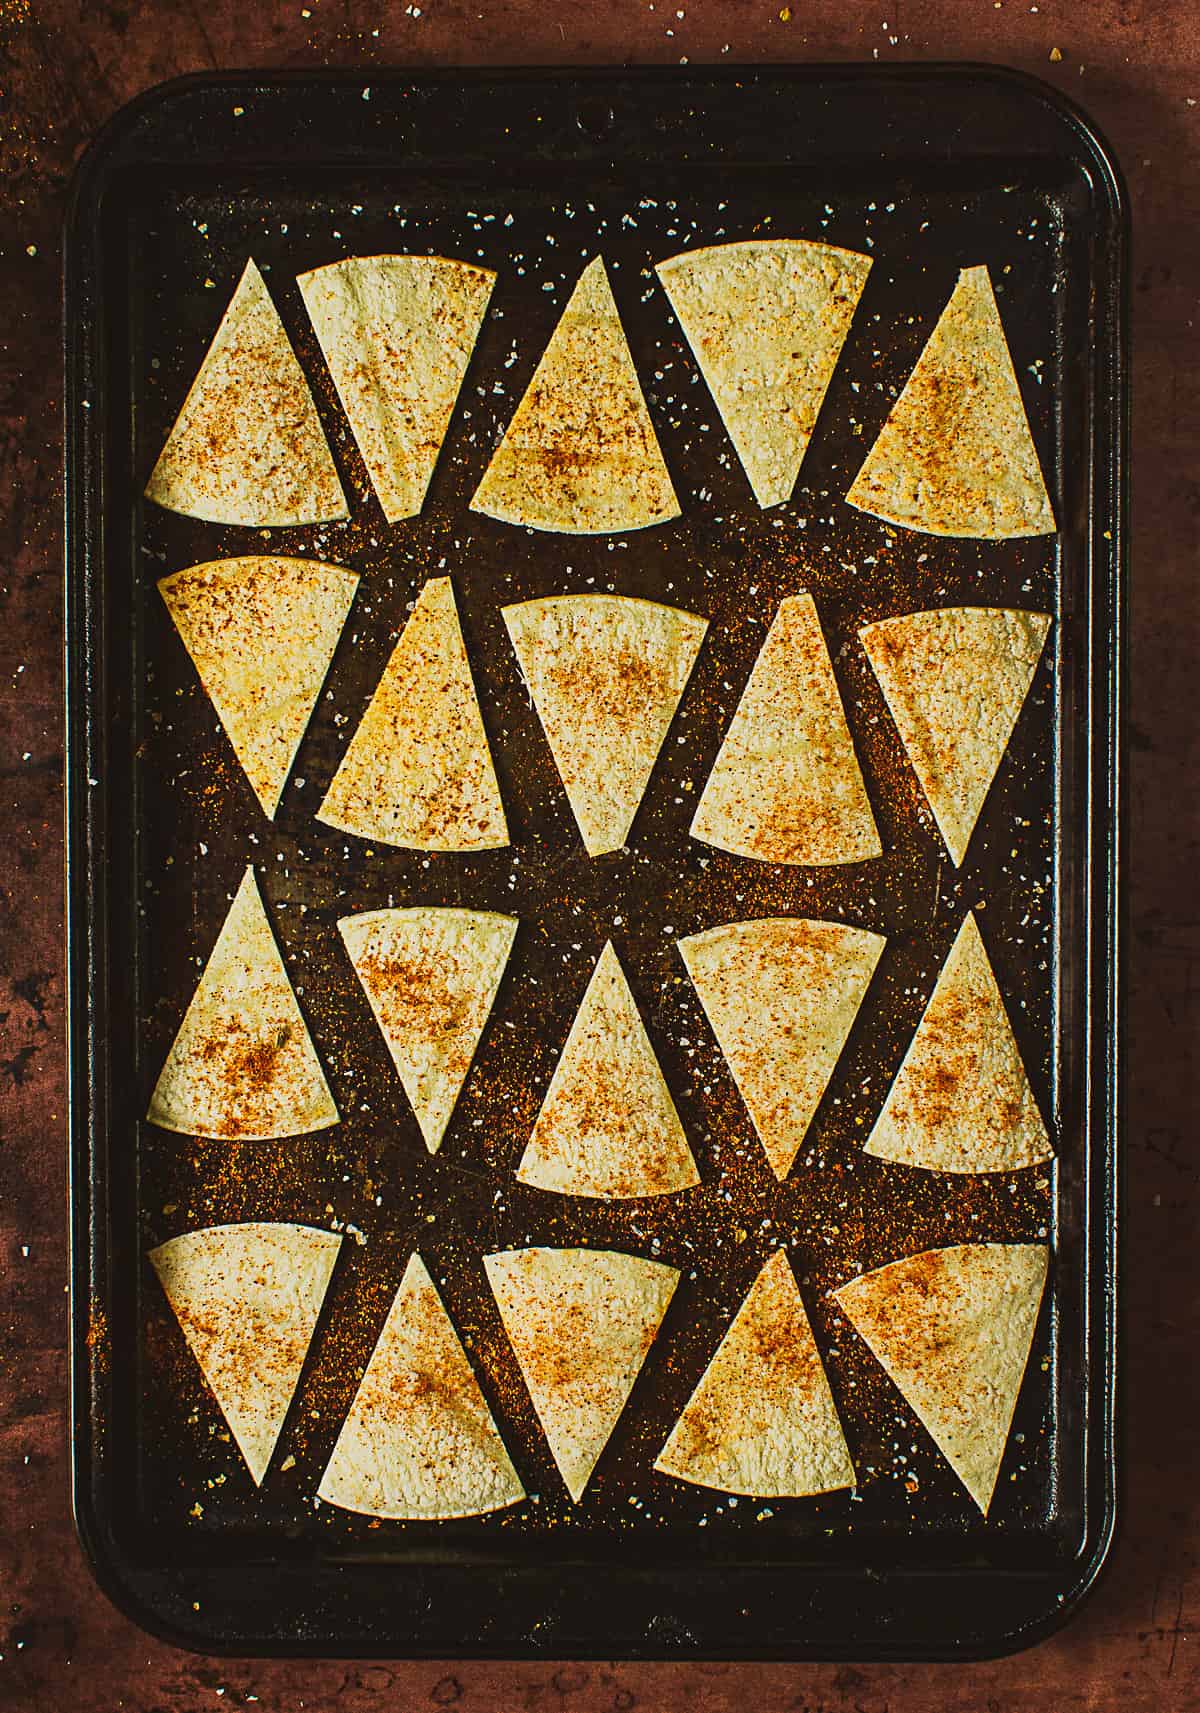 sliced tortillas on baking sheet